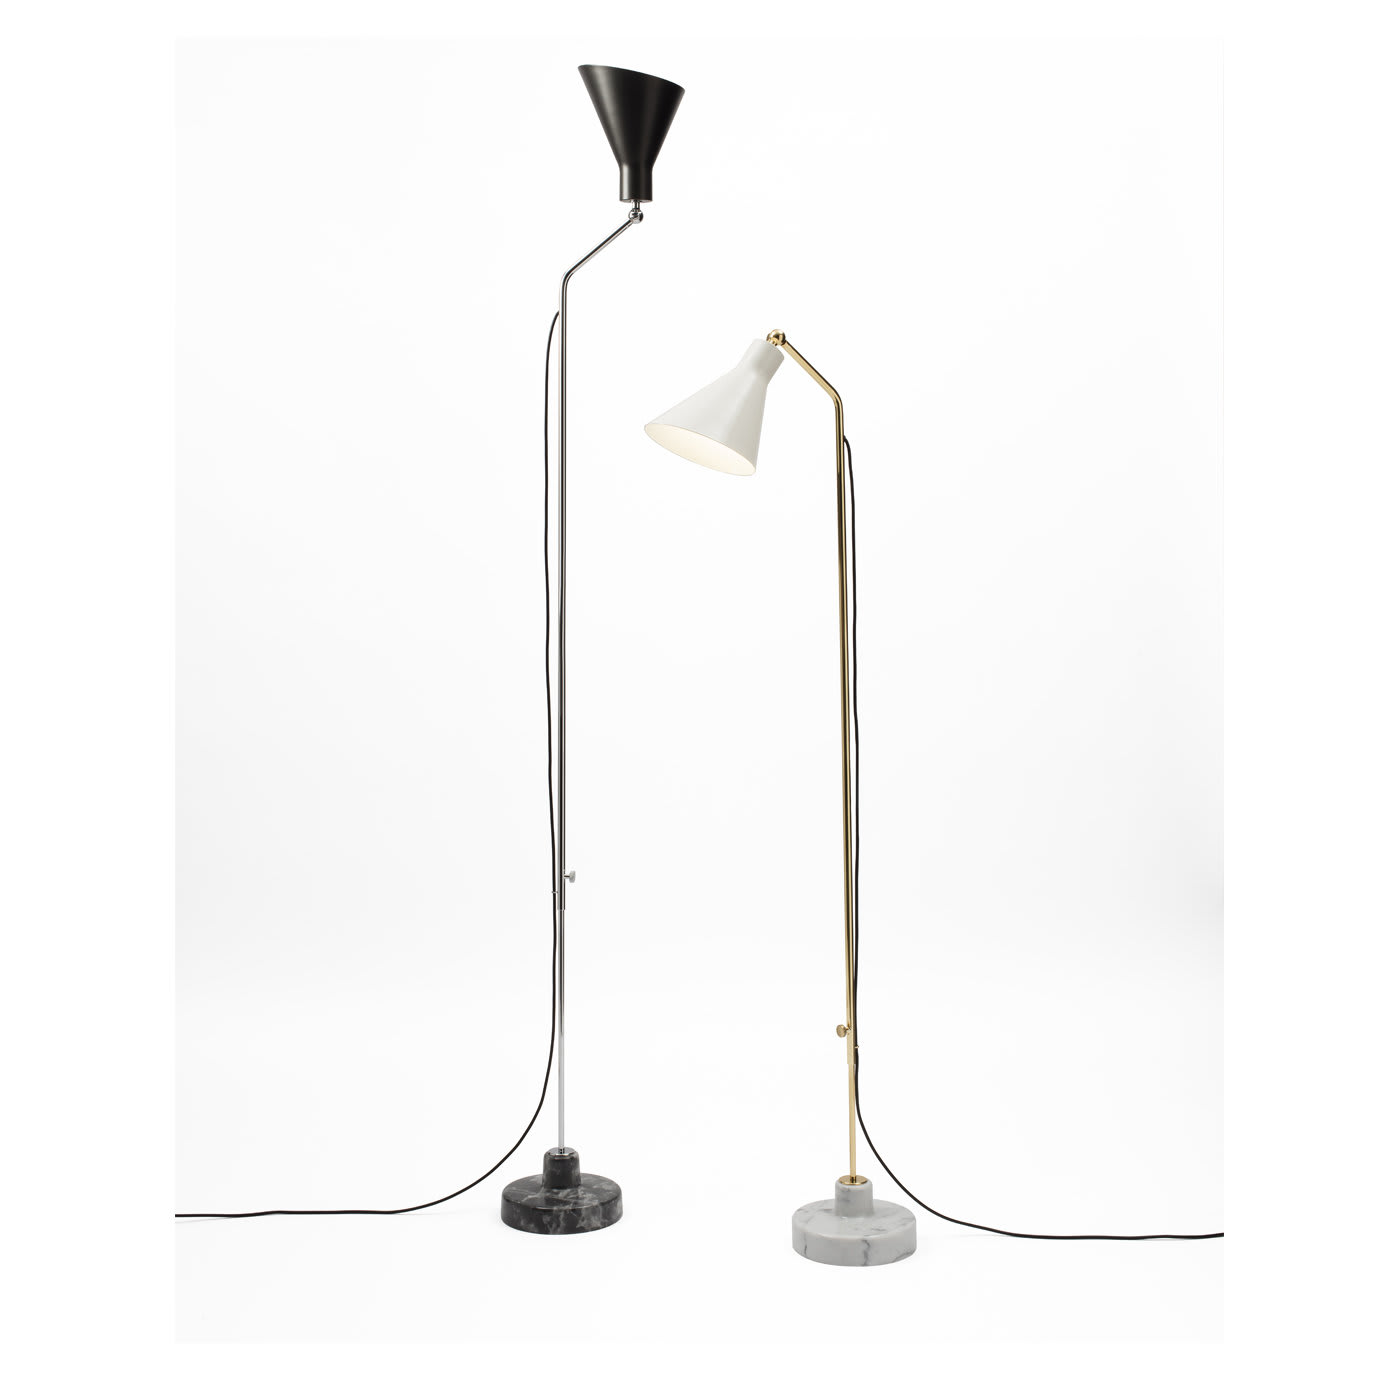 Alzabile Adjustable Lamp by Ignazio Gardella - Tato